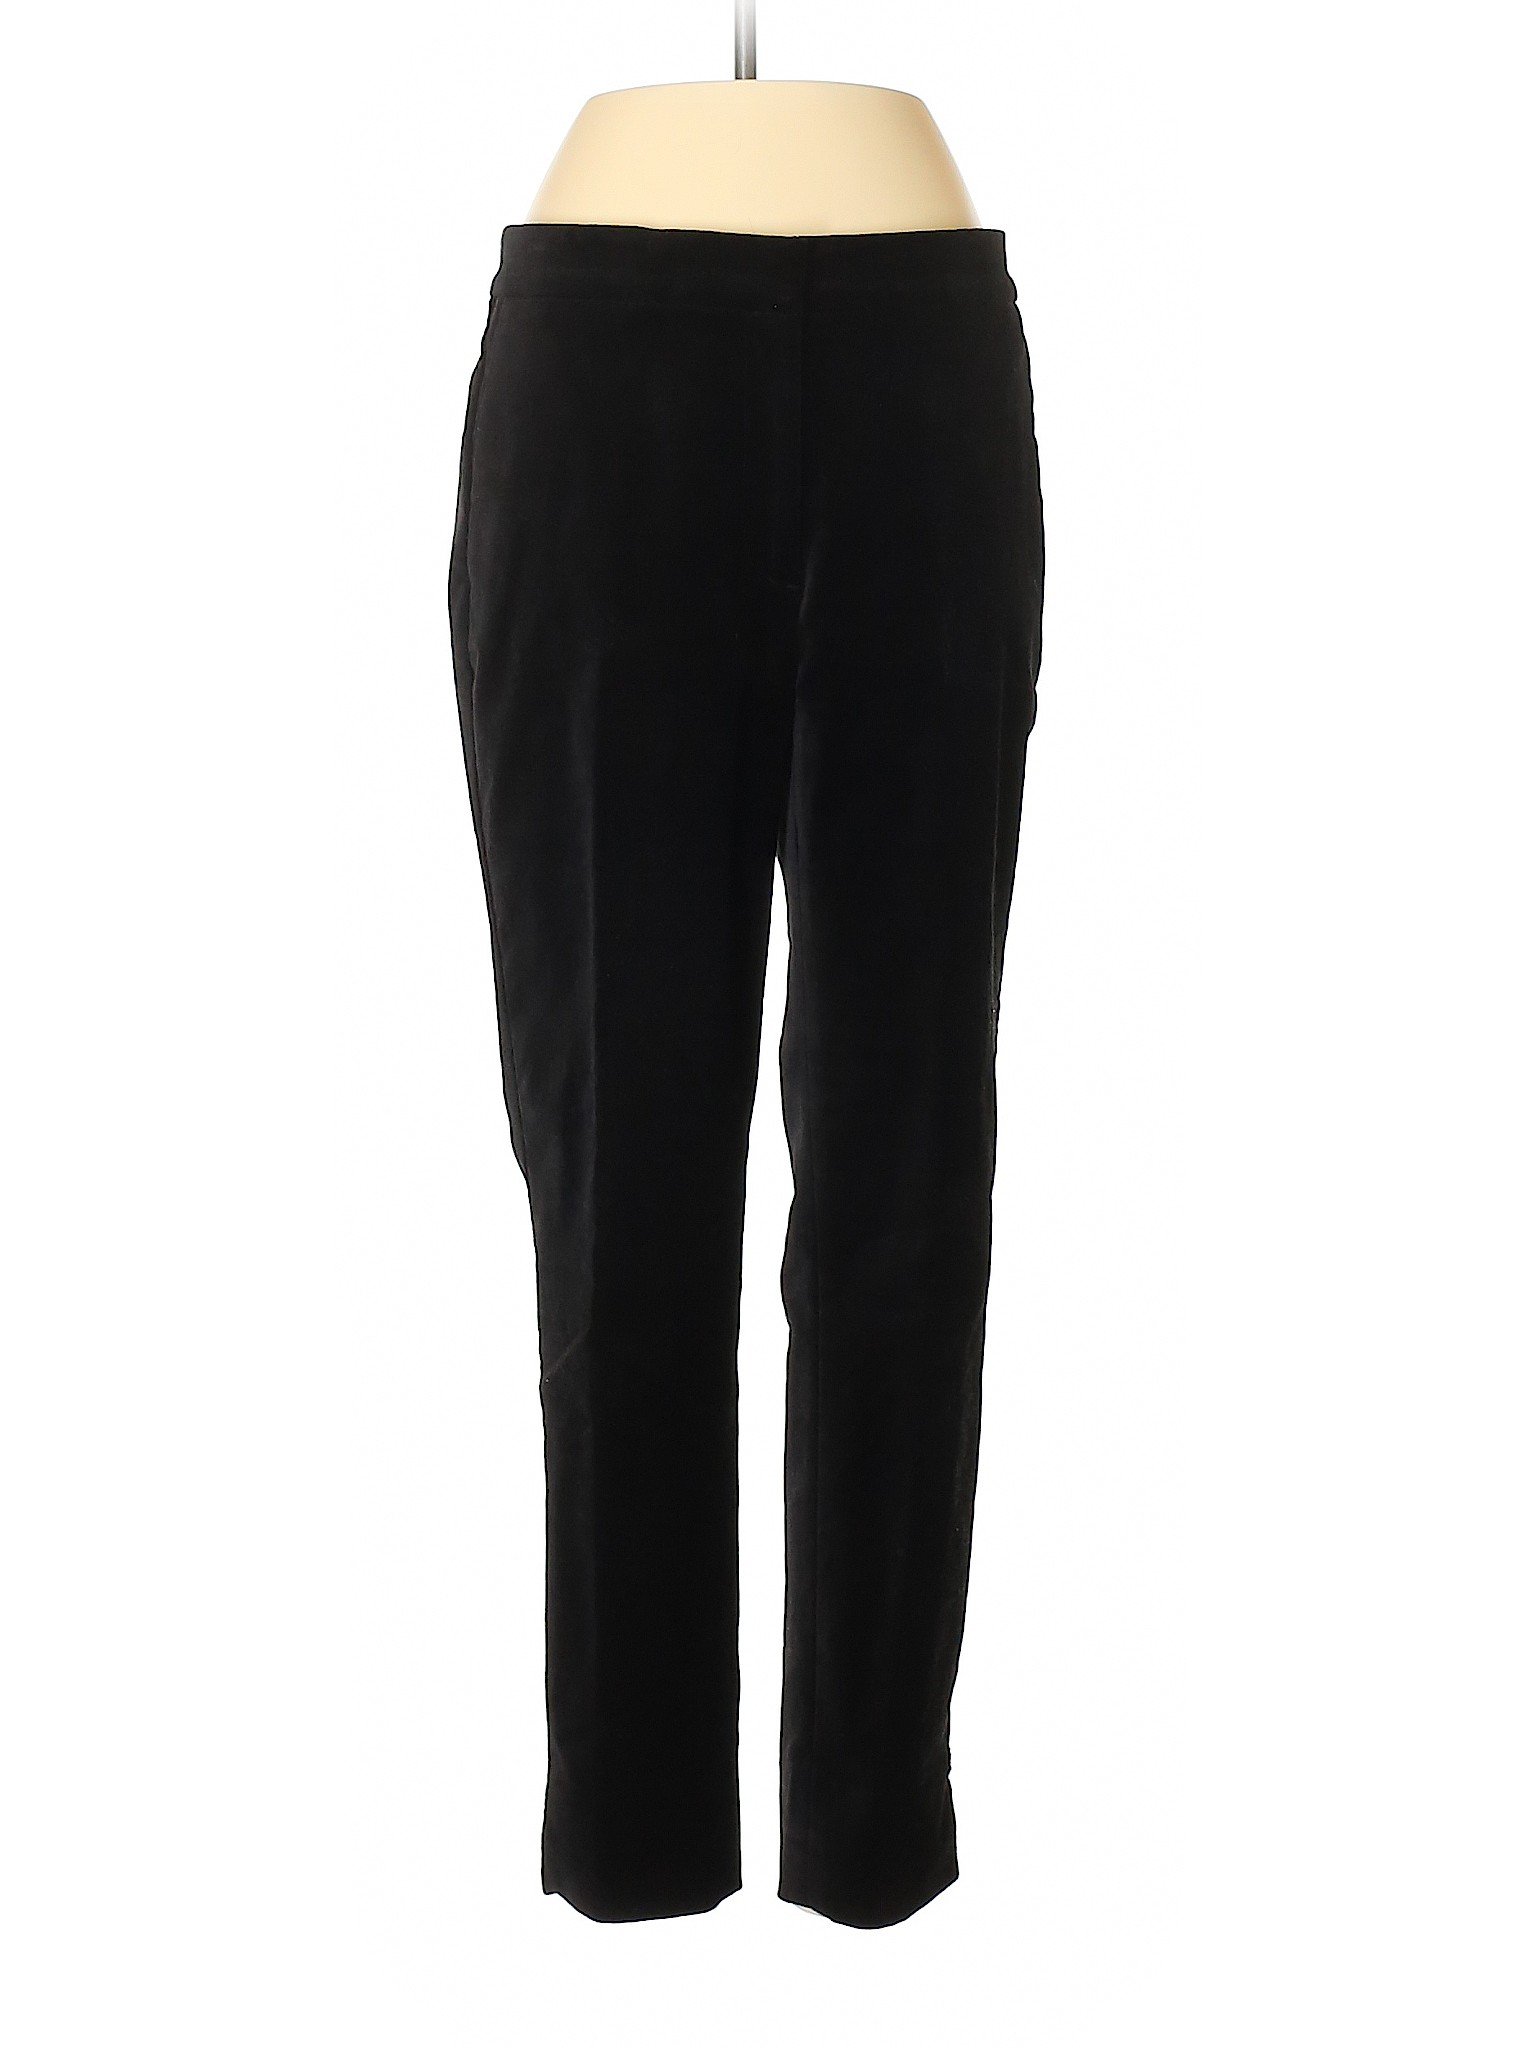 Ann Taylor Women Black Casual Pants 2 Petites | eBay